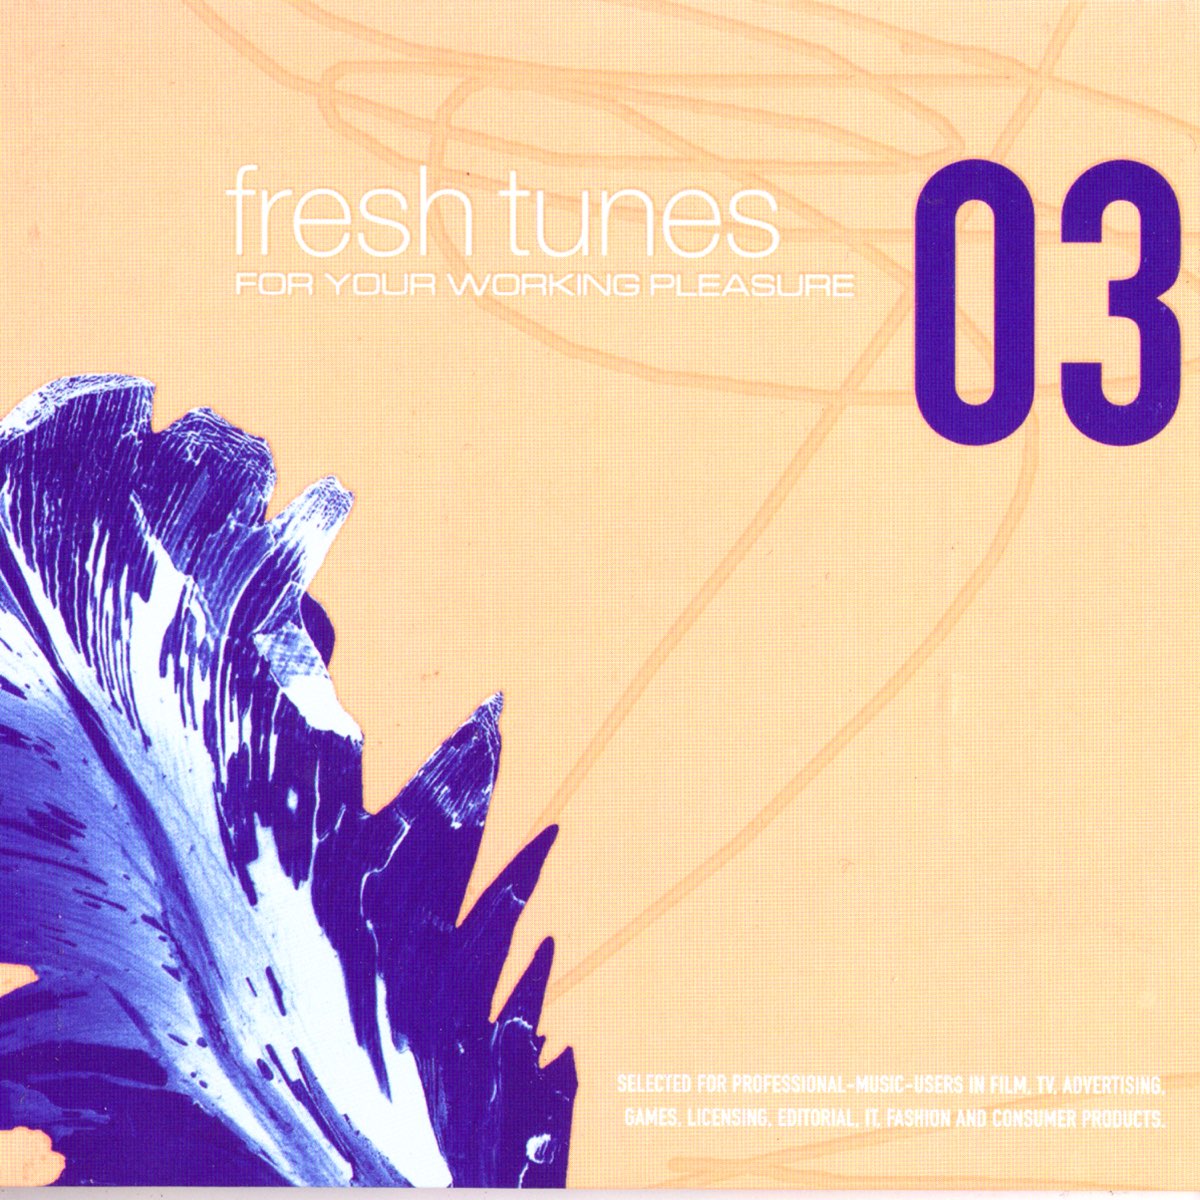 Fresh tunes. Фреш Тюнс. Слушайте Fresh Tunes. Fresh Tunes UPC. Обложка для Fresh Tunes 1400 YF 1400.